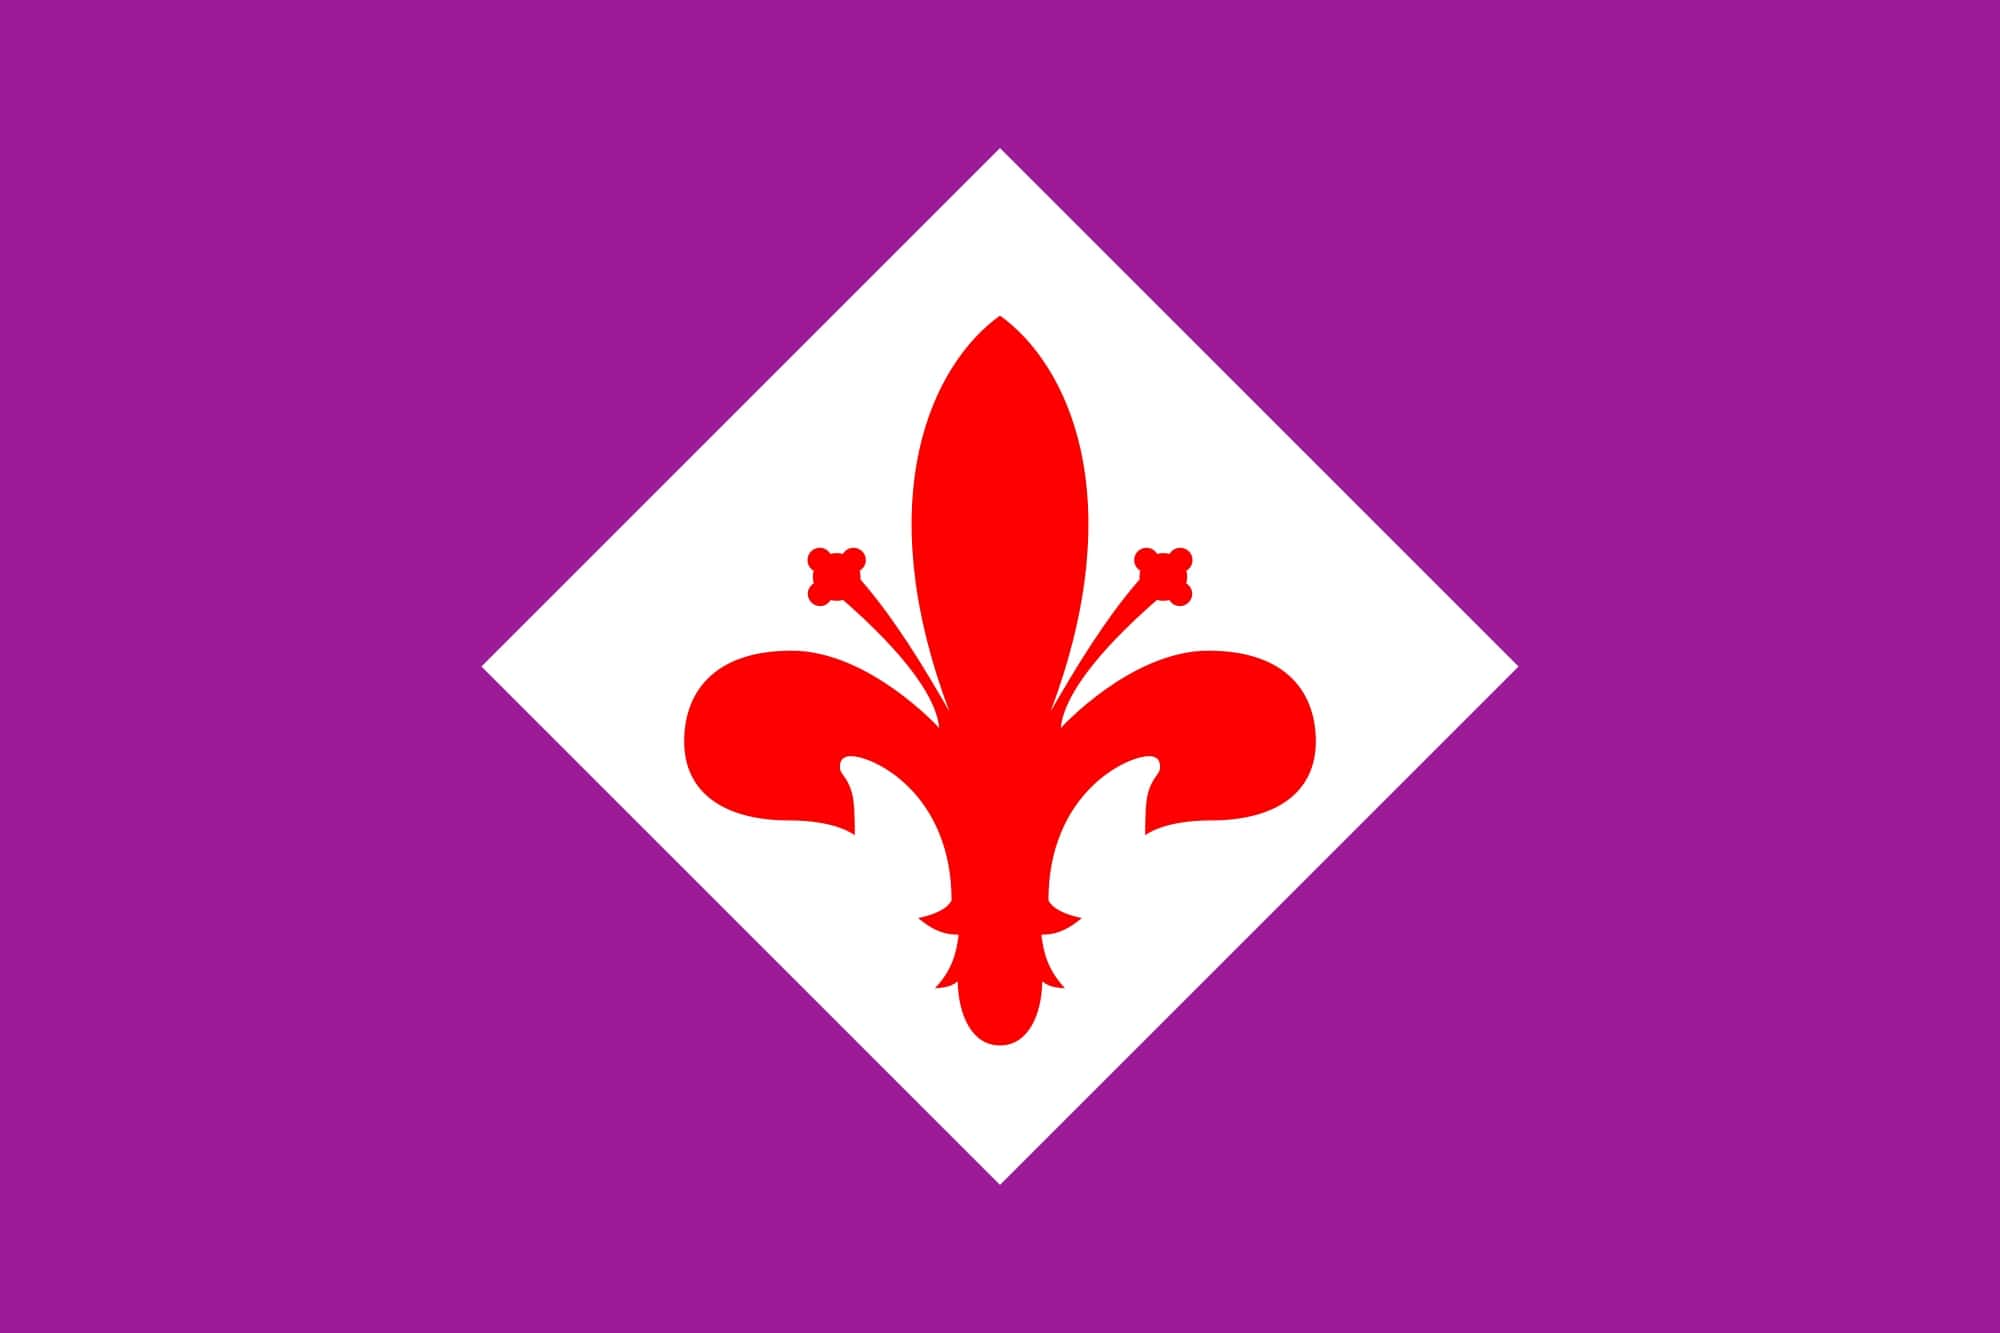 Calciomercato Fiorentina